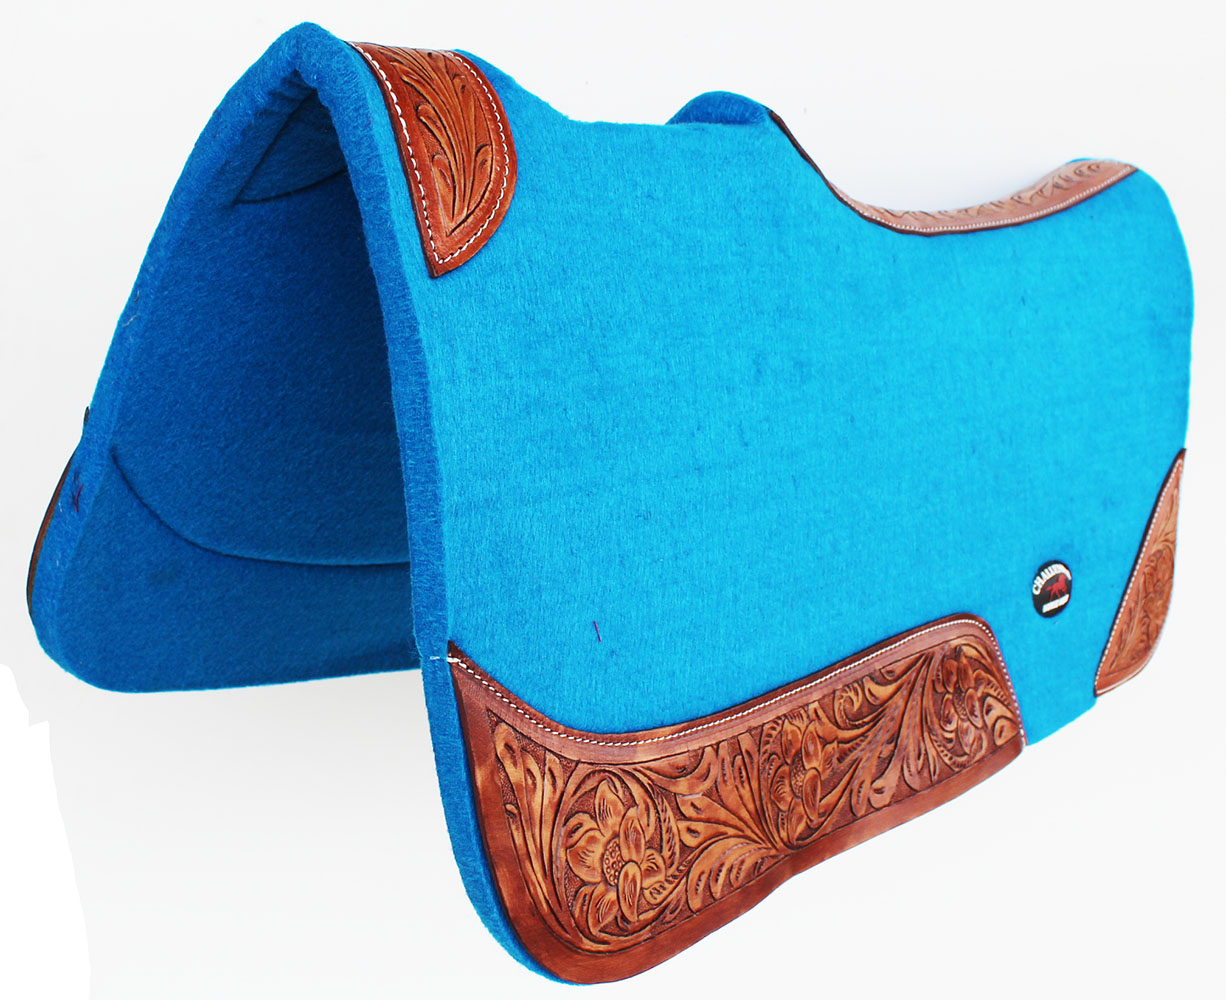 blue western saddle pad